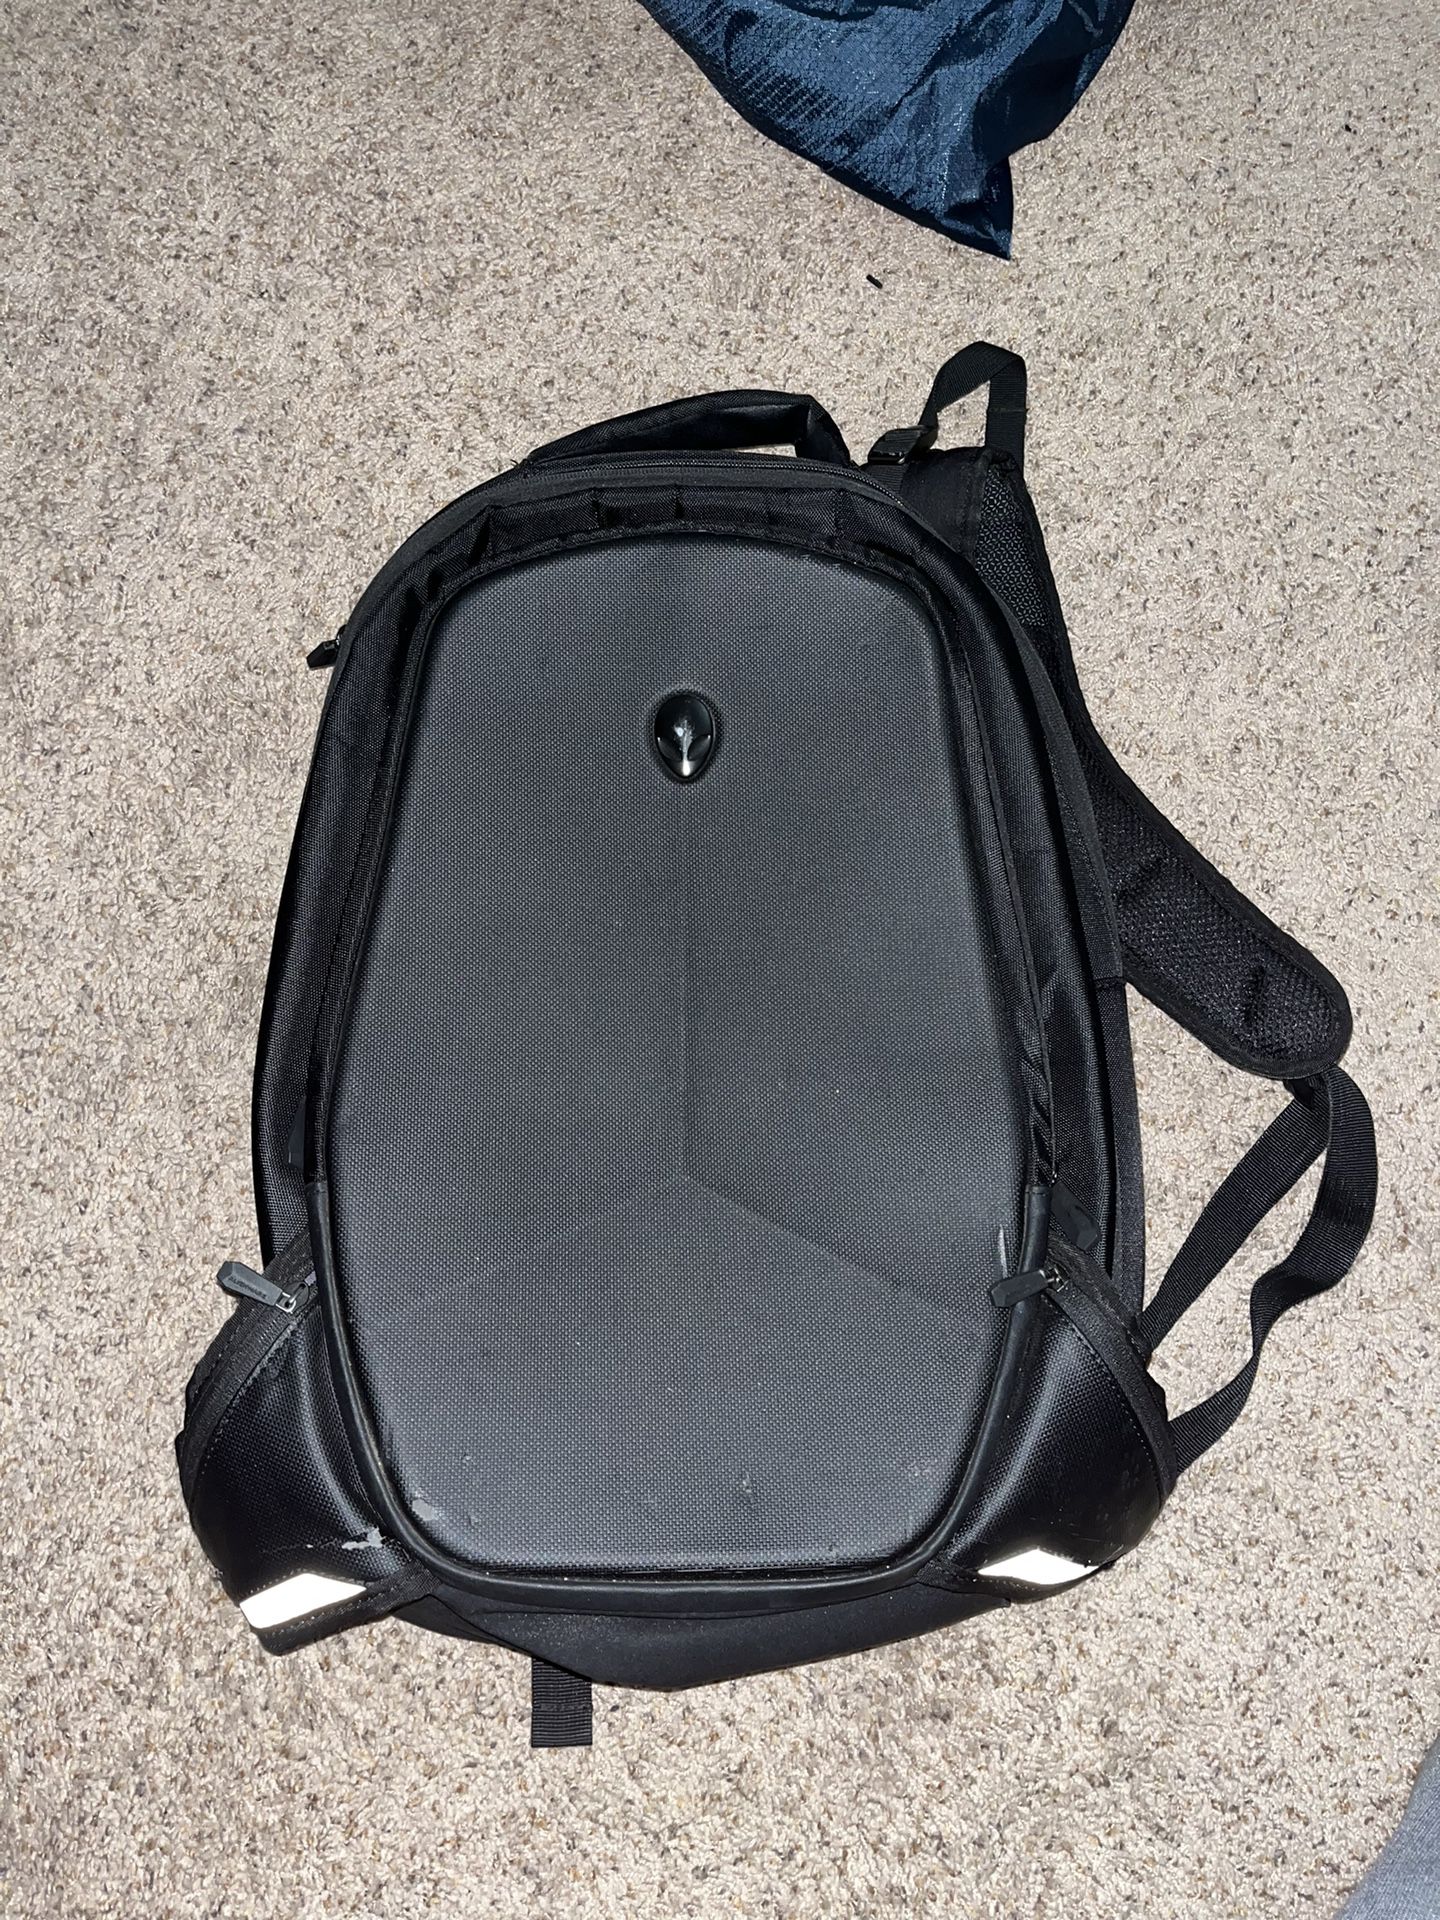 Alienware Laptop Backpack